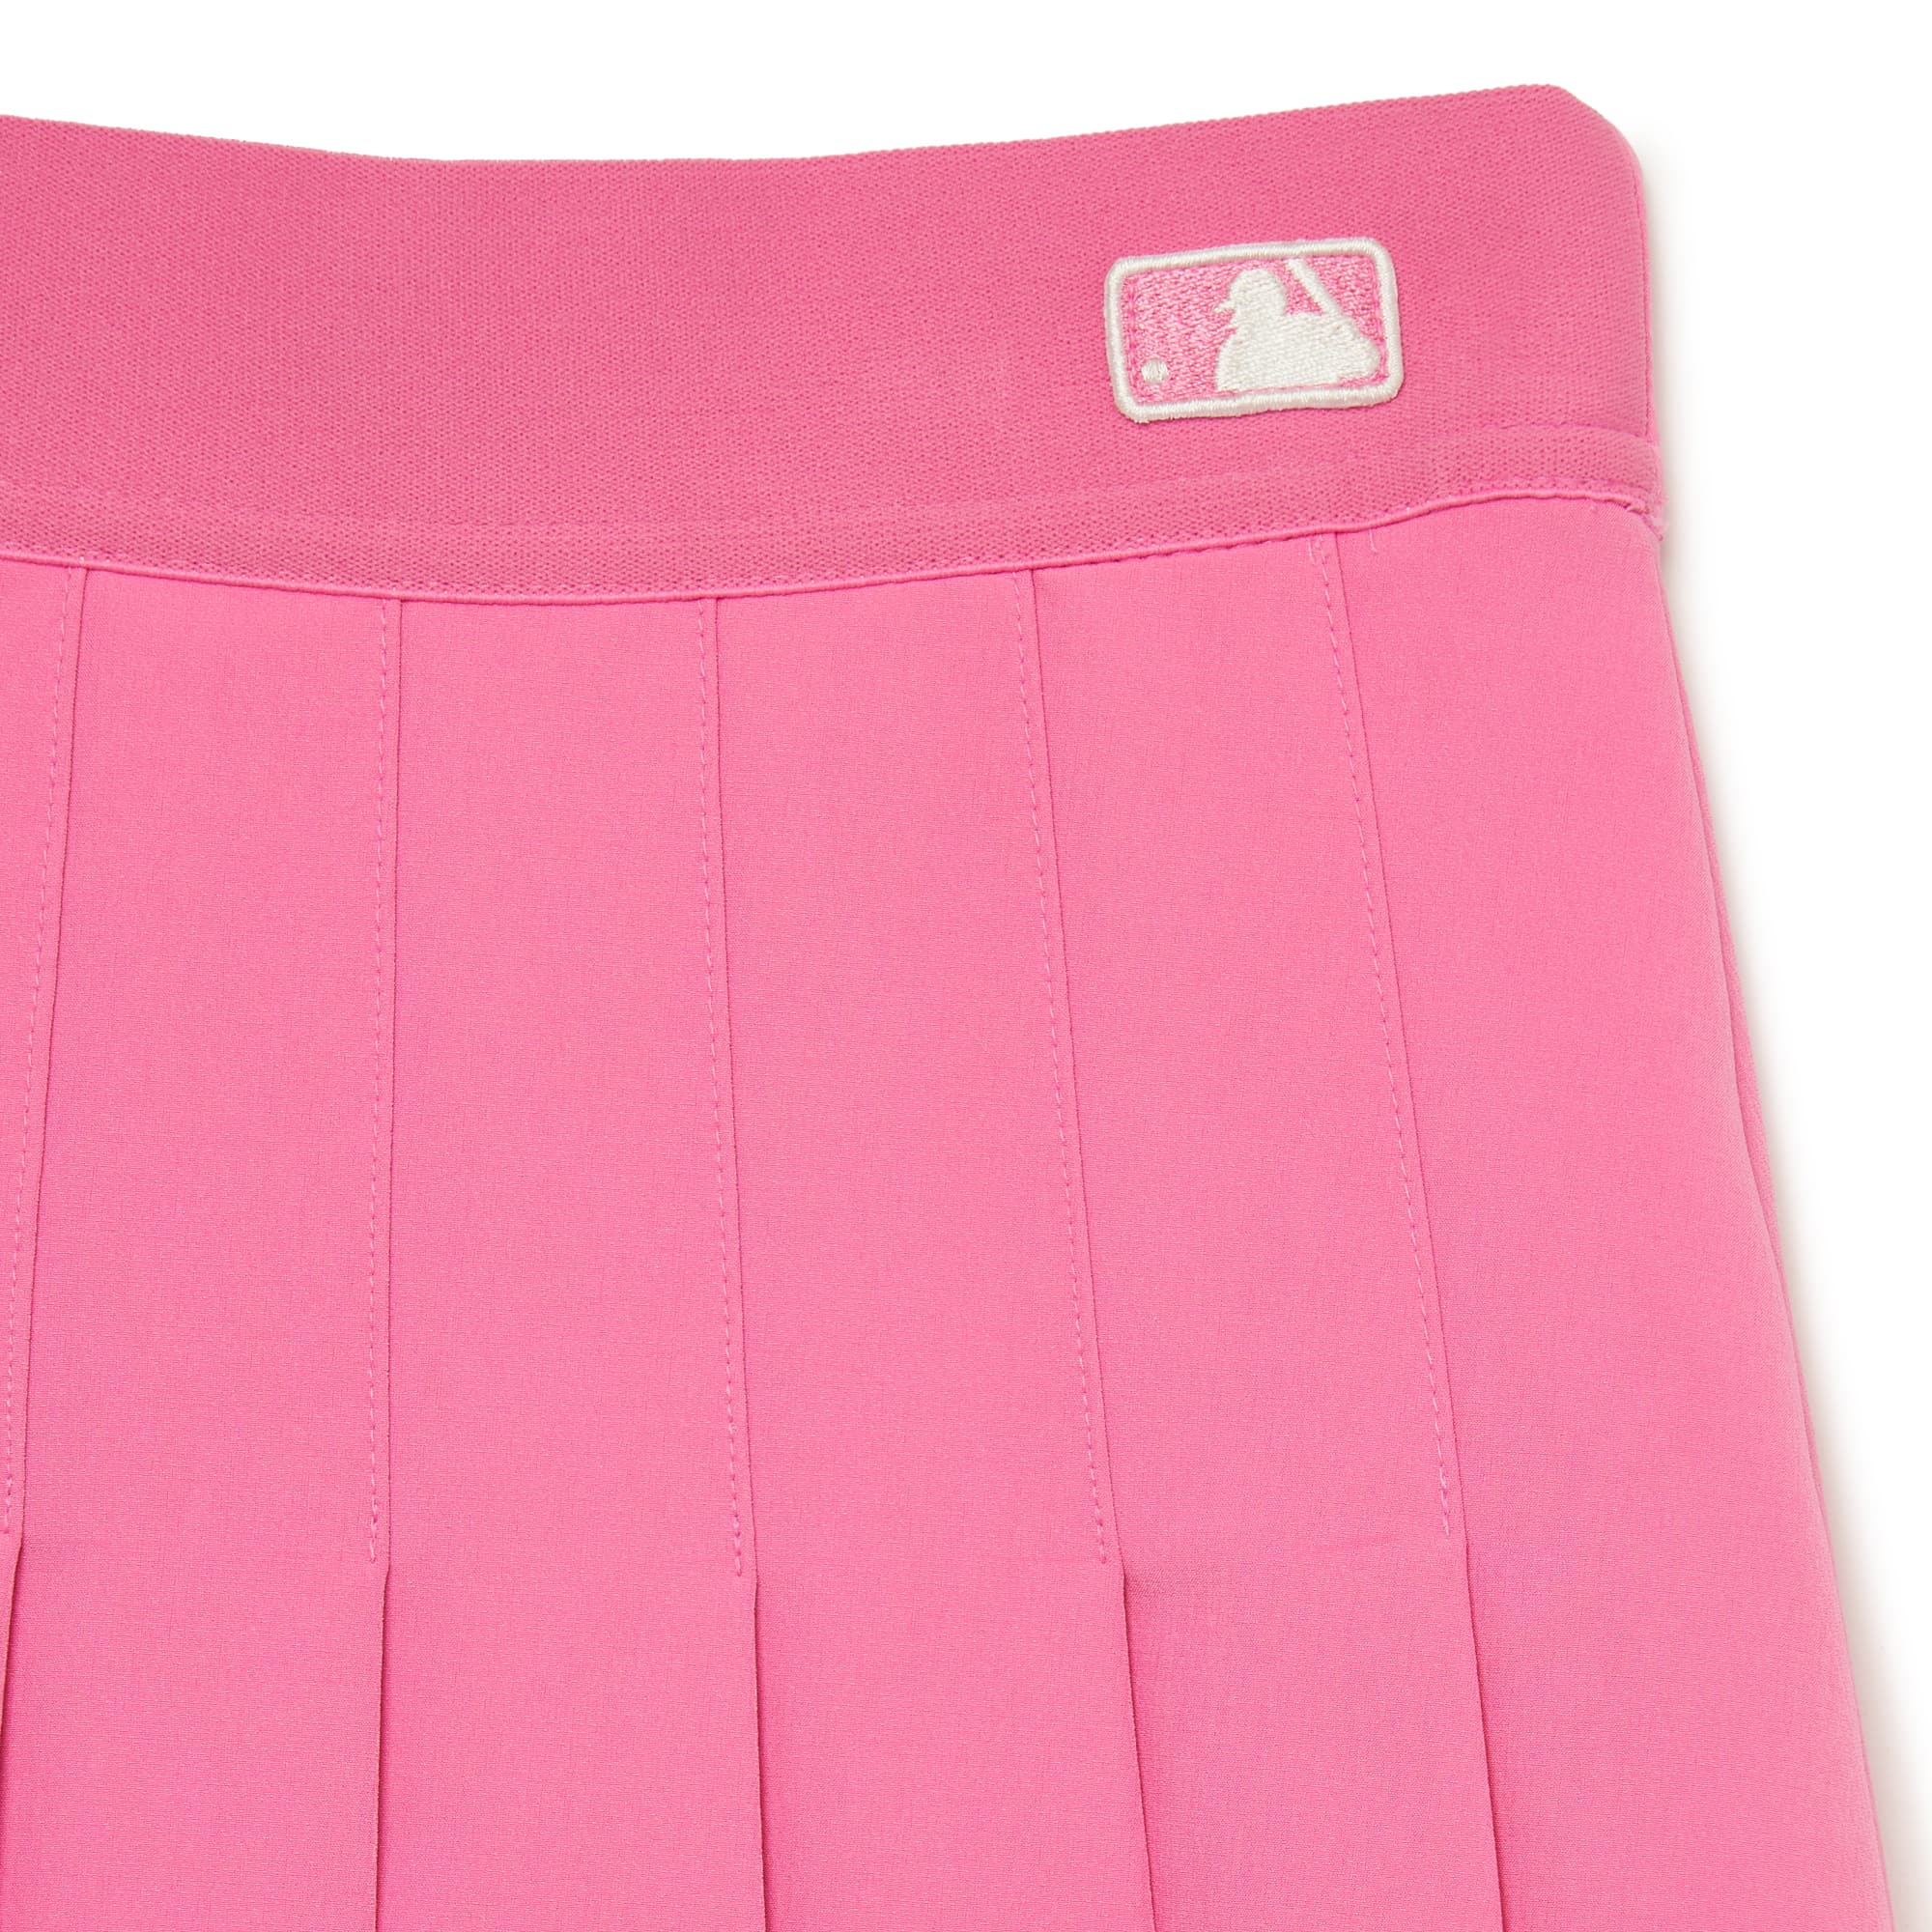 Chân váy thể thao chữ A RUDAL dành cho người yêu Tennis - Cầu lông - G